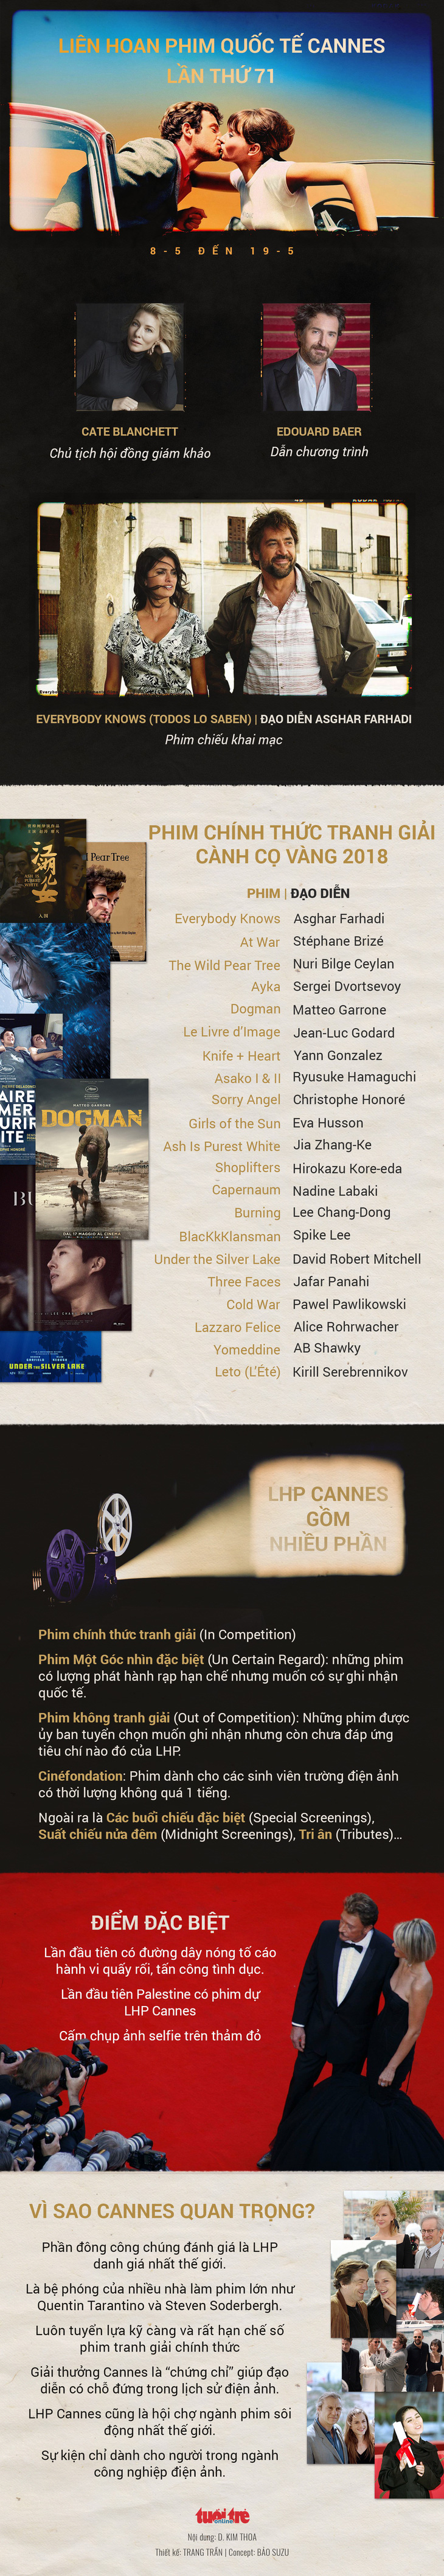 Những cái tên Việt và dấu ấn châu Á tại Cannes 2018 - Ảnh 9.